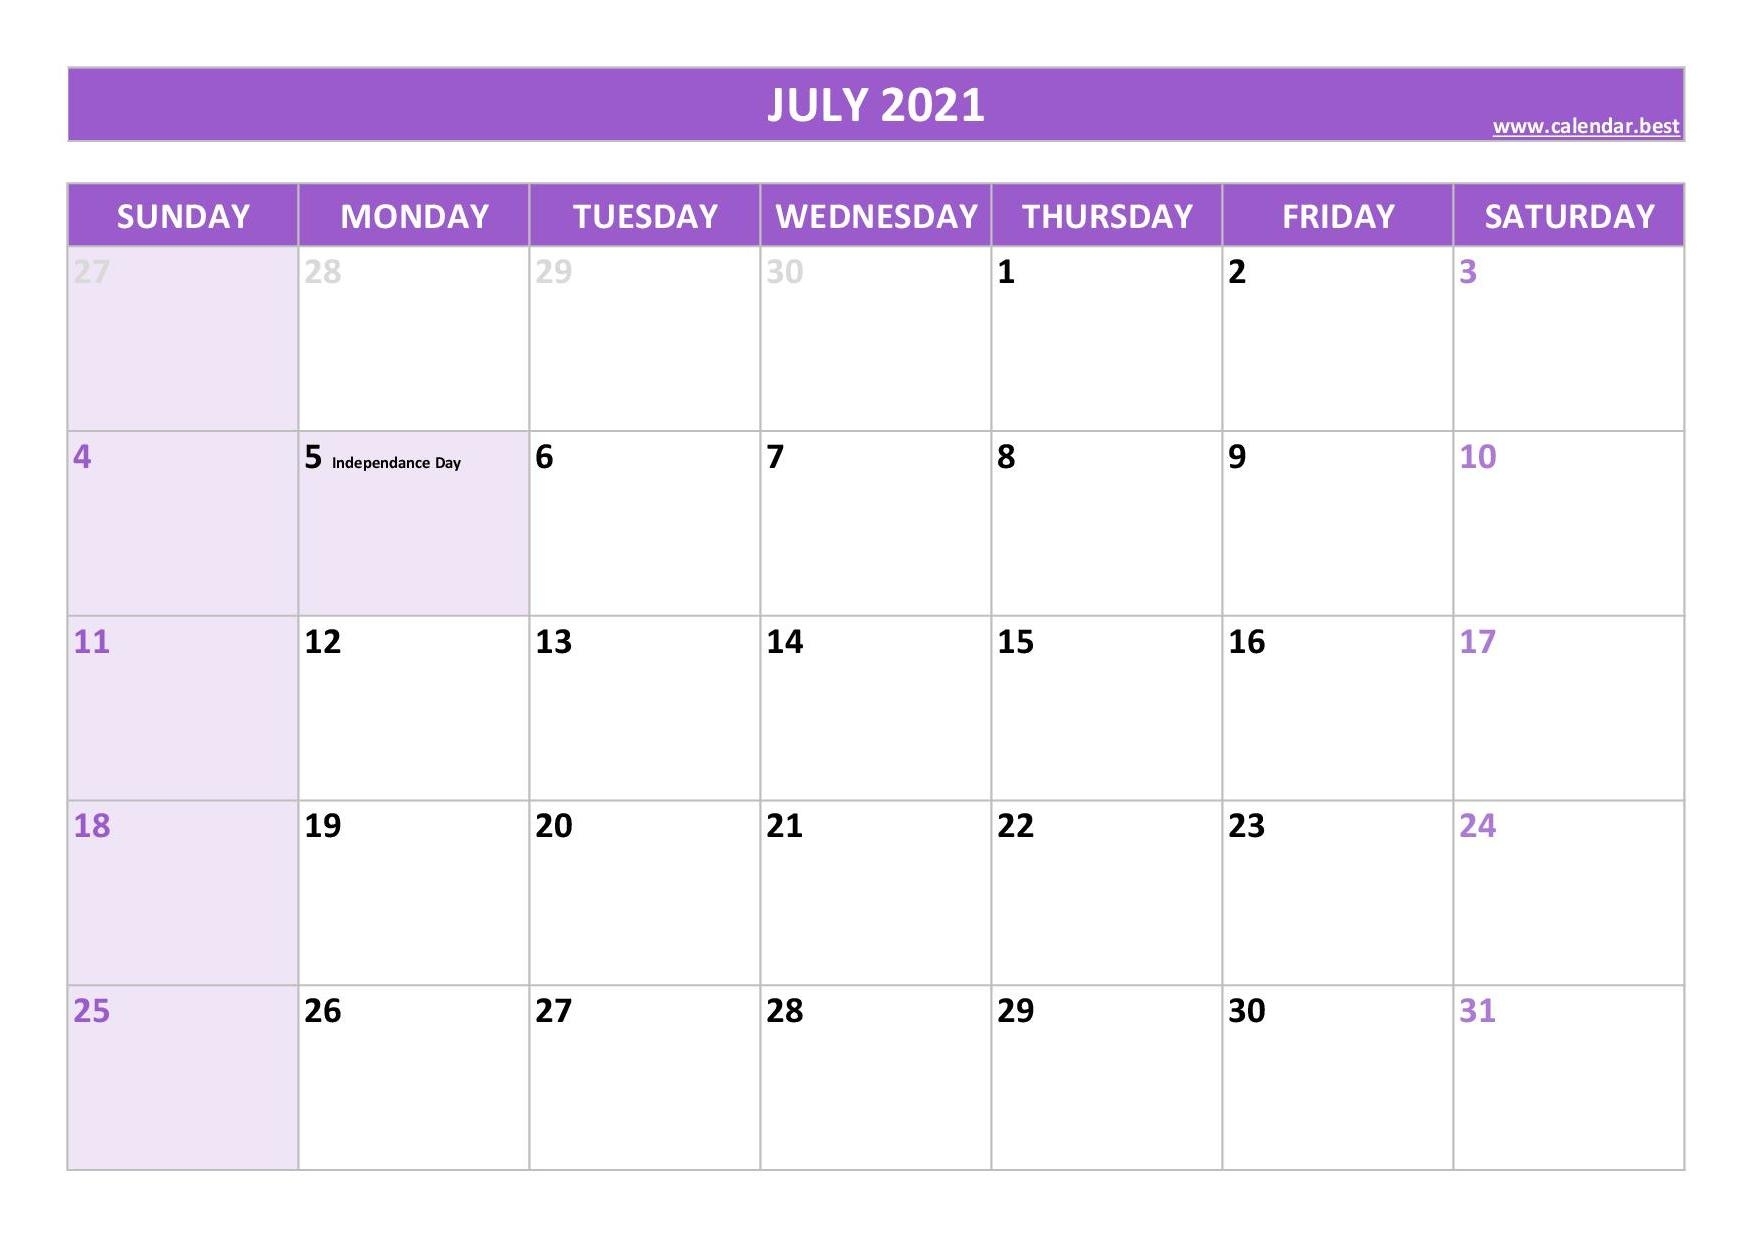 July 2021 Calendar -Calendar.best July 2021 Calendar Panchang